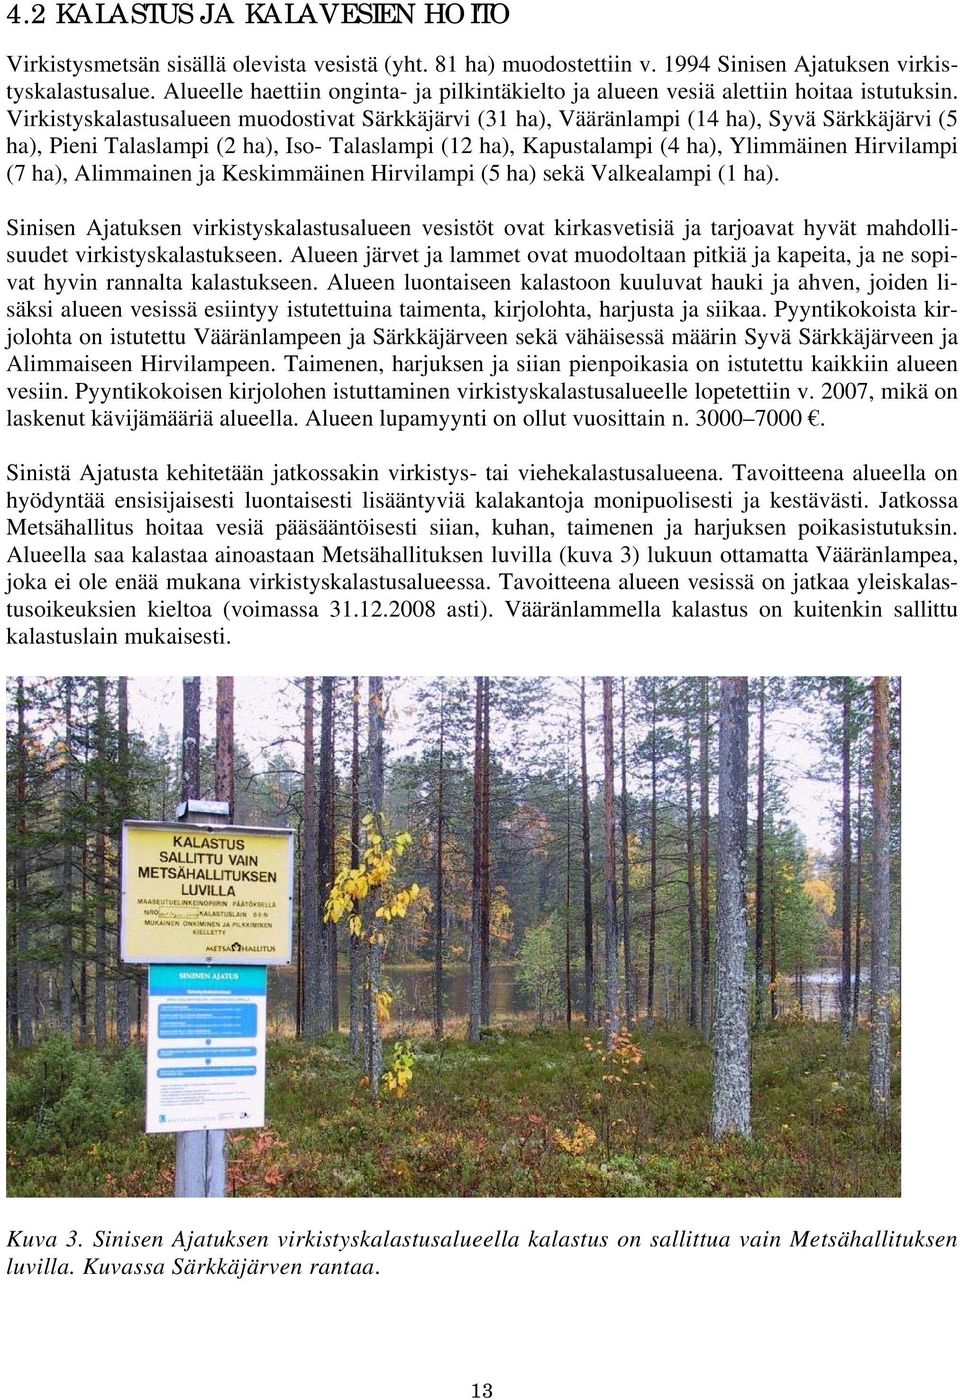 Virkistyskalastusalueen muodostivat Särkkäjärvi (31 ha), Vääränlampi (14 ha), Syvä Särkkäjärvi (5 ha), Pieni Talaslampi (2 ha), Iso- Talaslampi (12 ha), Kapustalampi (4 ha), Ylimmäinen Hirvilampi (7